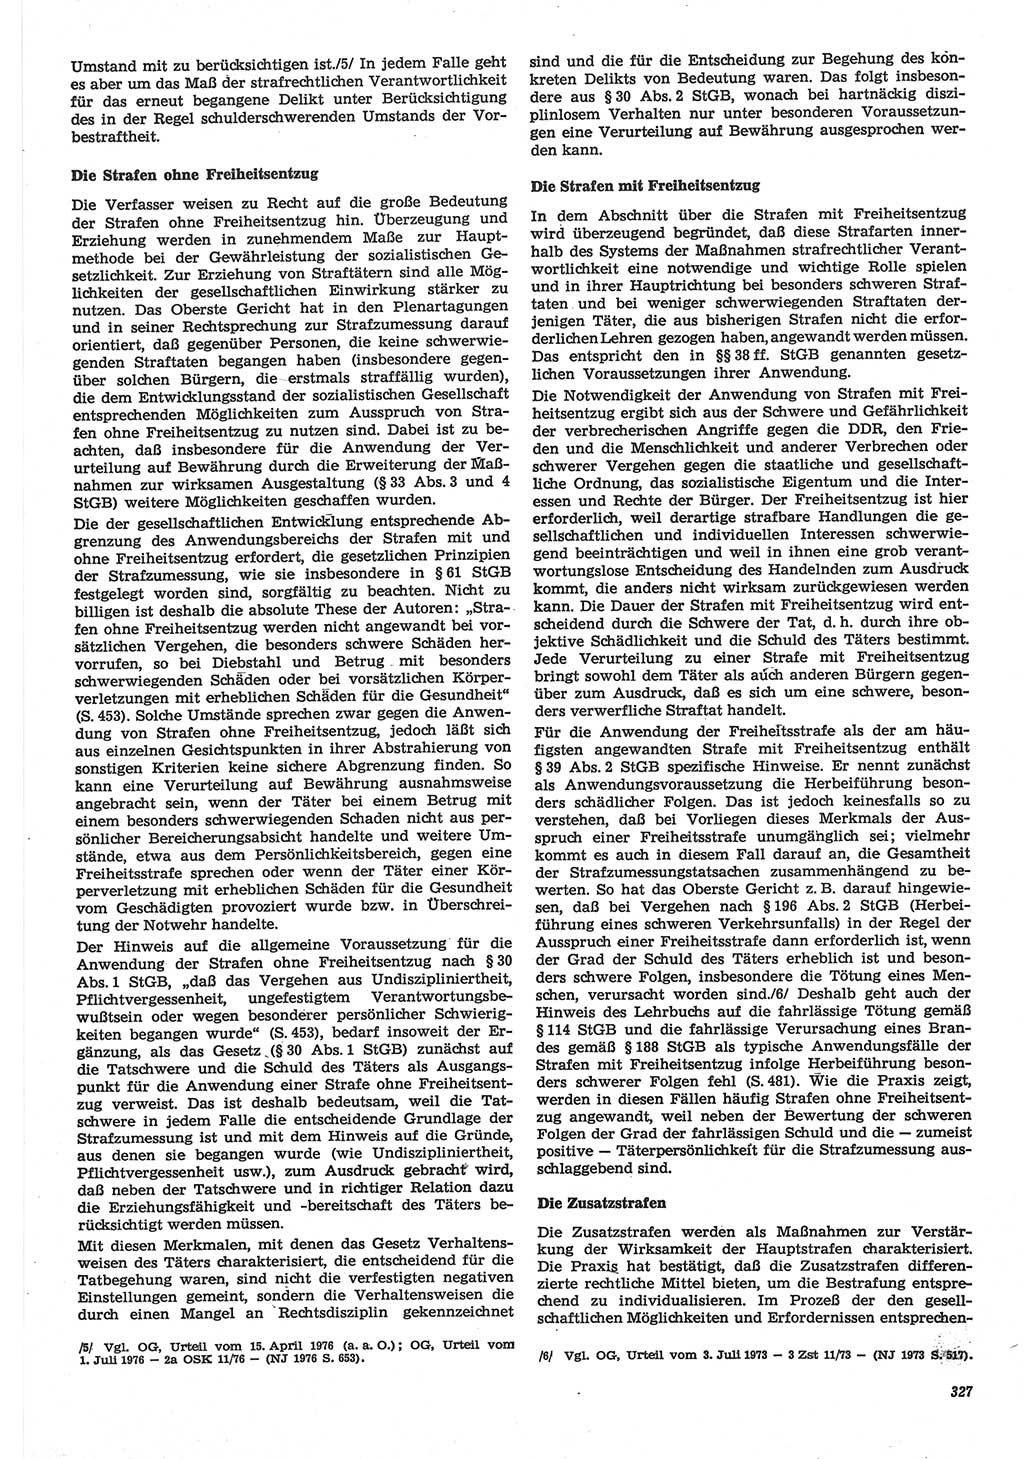 Neue Justiz (NJ), Zeitschrift für Recht und Rechtswissenschaft-Zeitschrift, sozialistisches Recht und Gesetzlichkeit, 31. Jahrgang 1977, Seite 327 (NJ DDR 1977, S. 327)